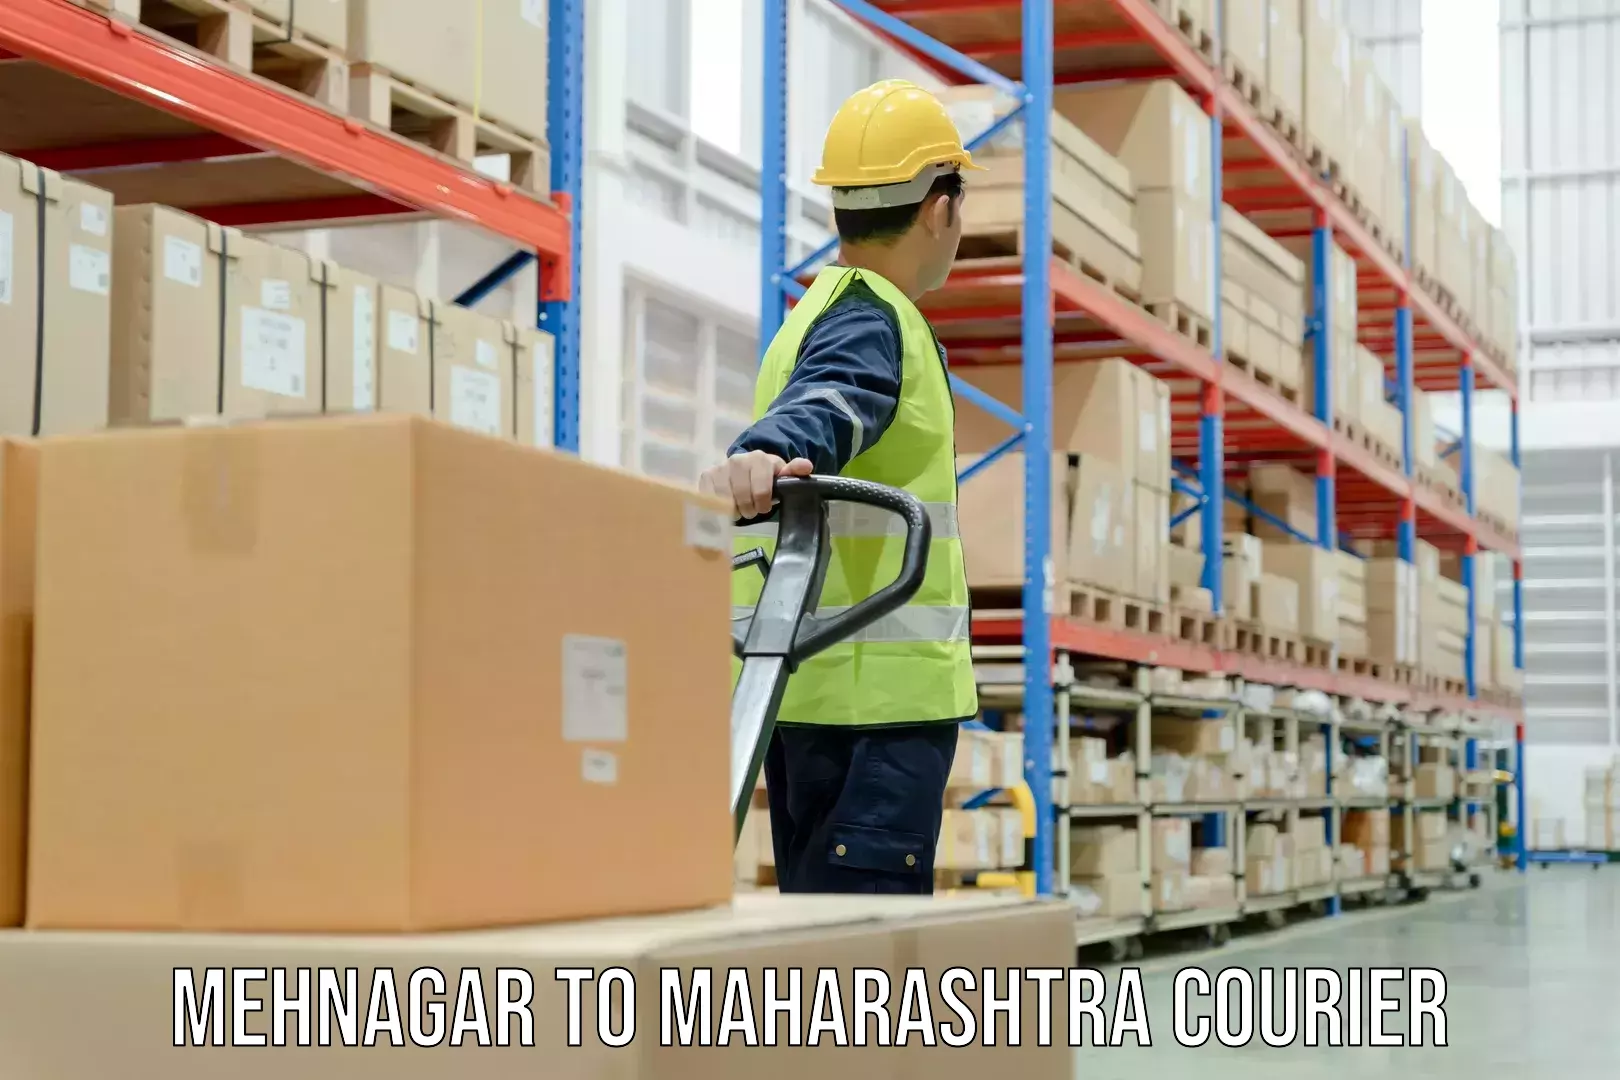 Speedy delivery service Mehnagar to Nagothane